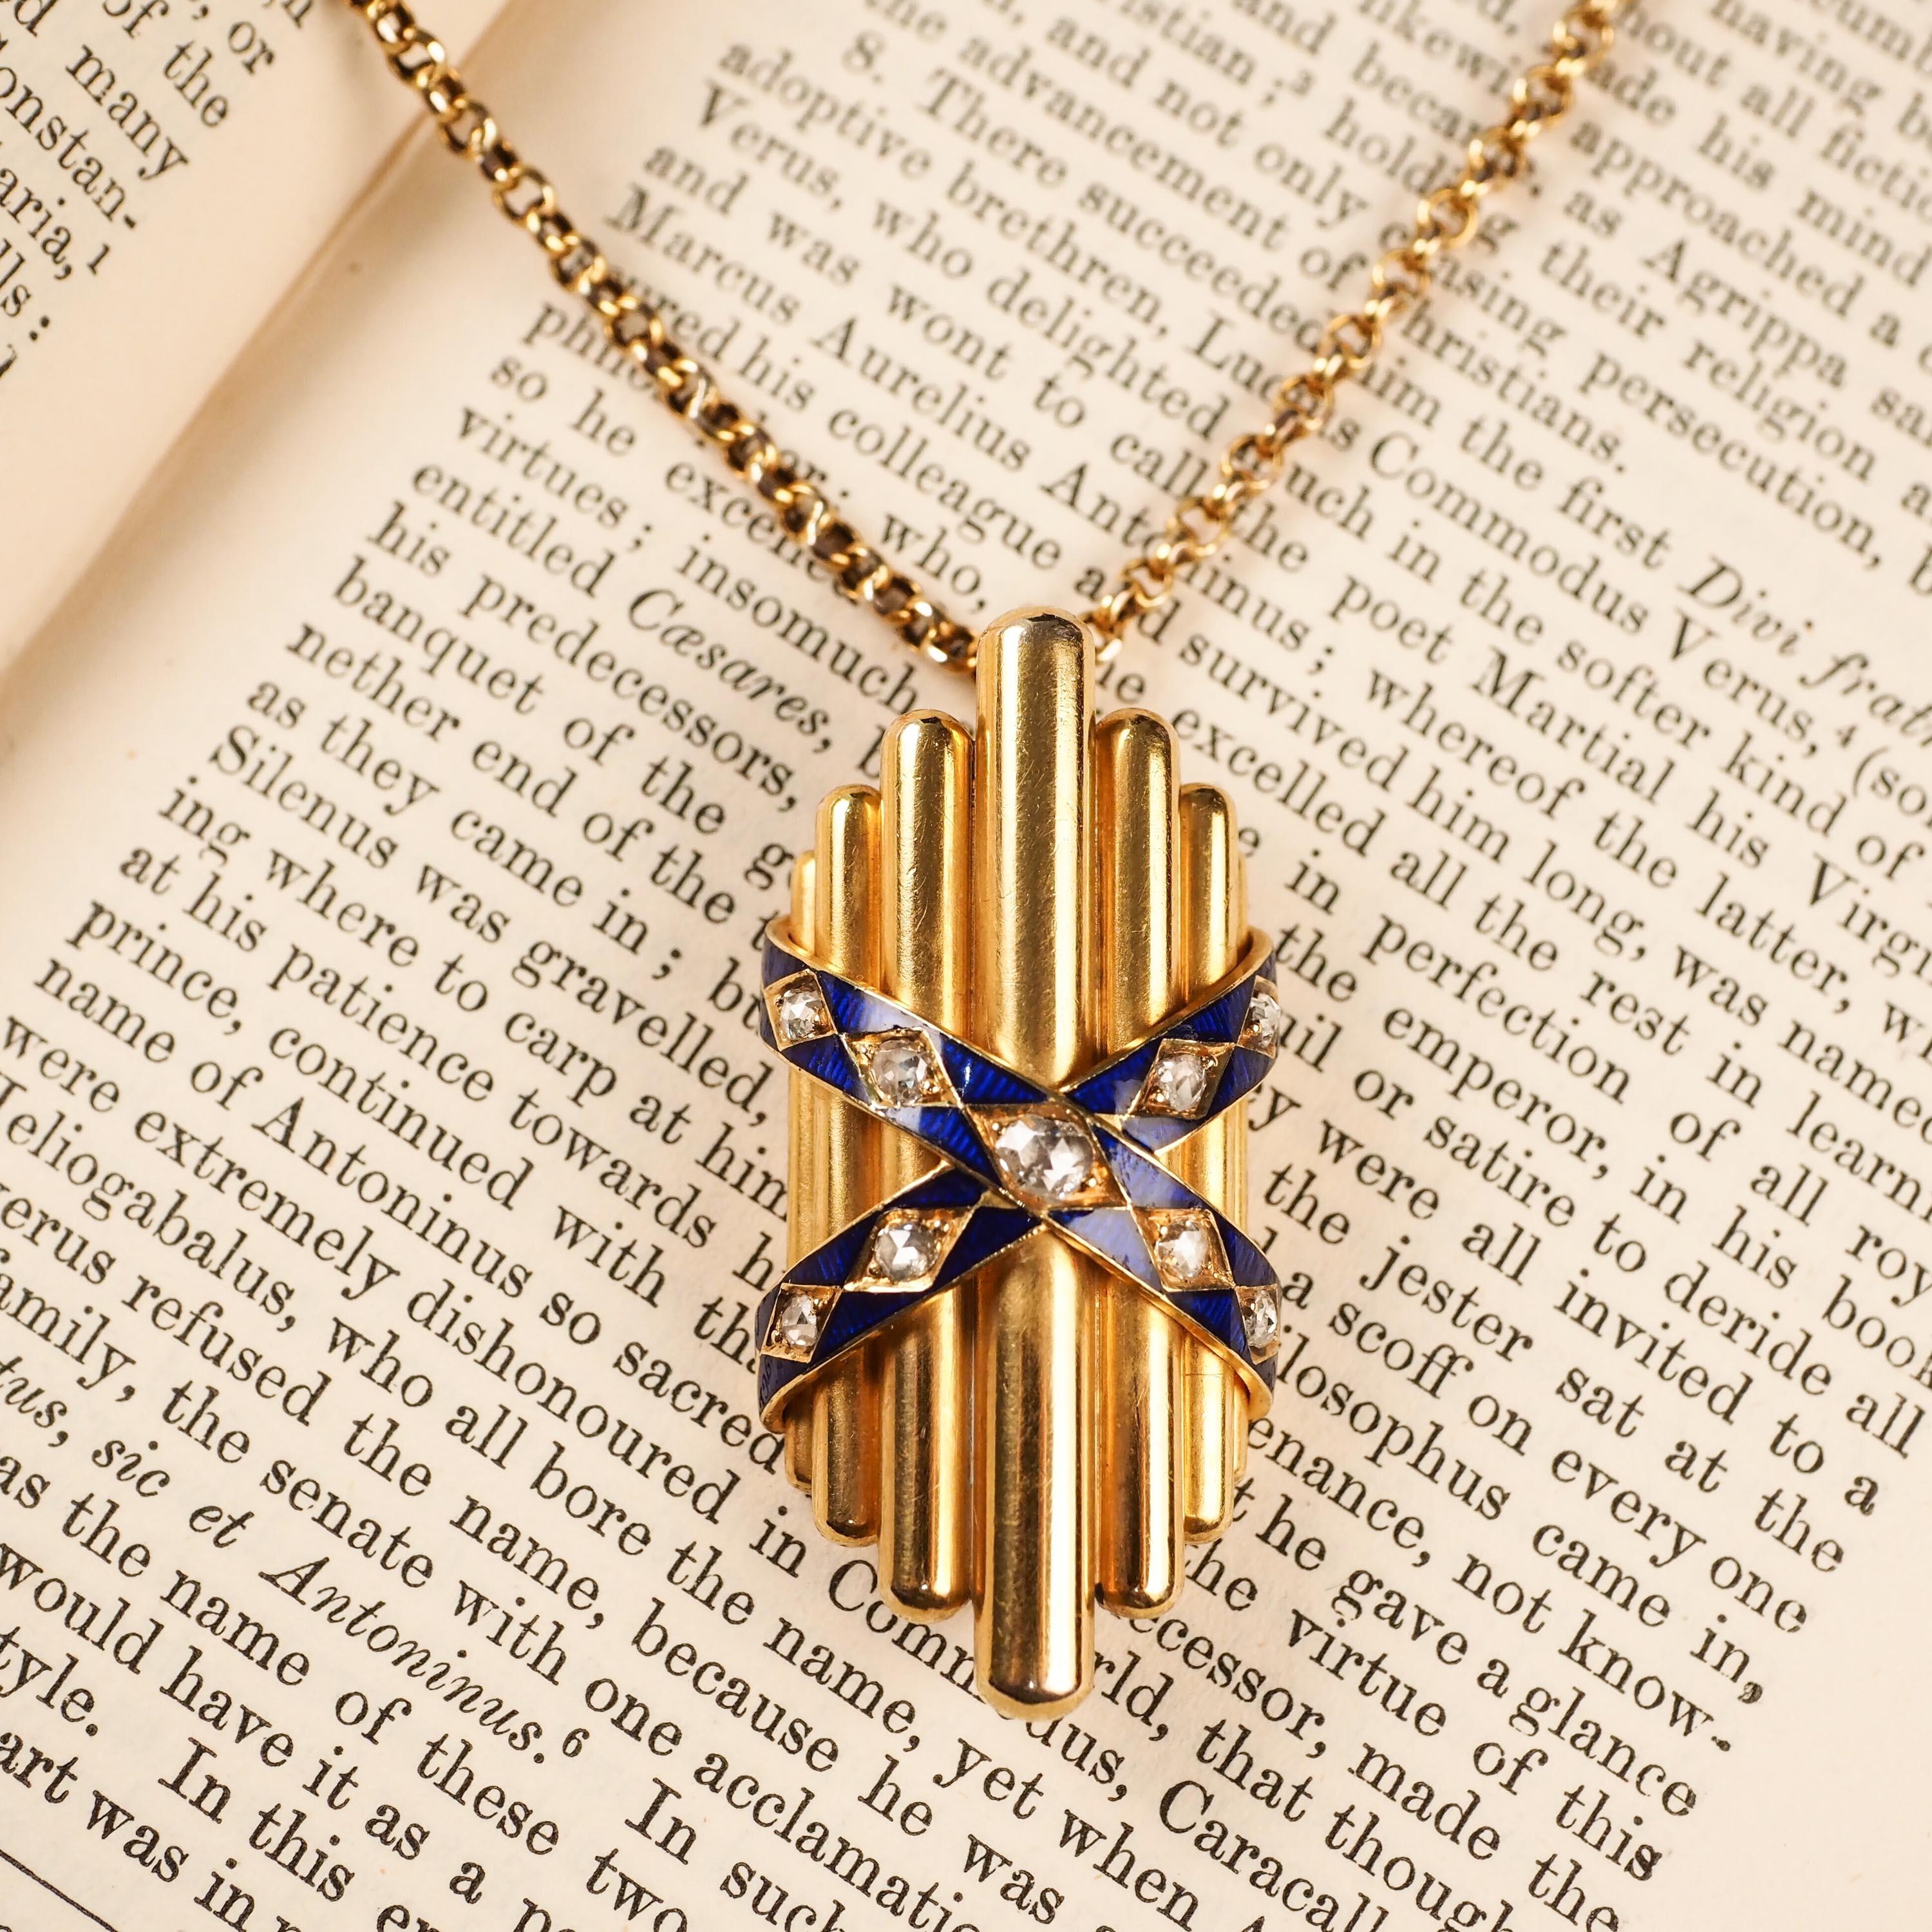 Antique 18K Gold Diamond Rose Cut Pendant Necklace with Blue Enamel - c.1880 For Sale 7